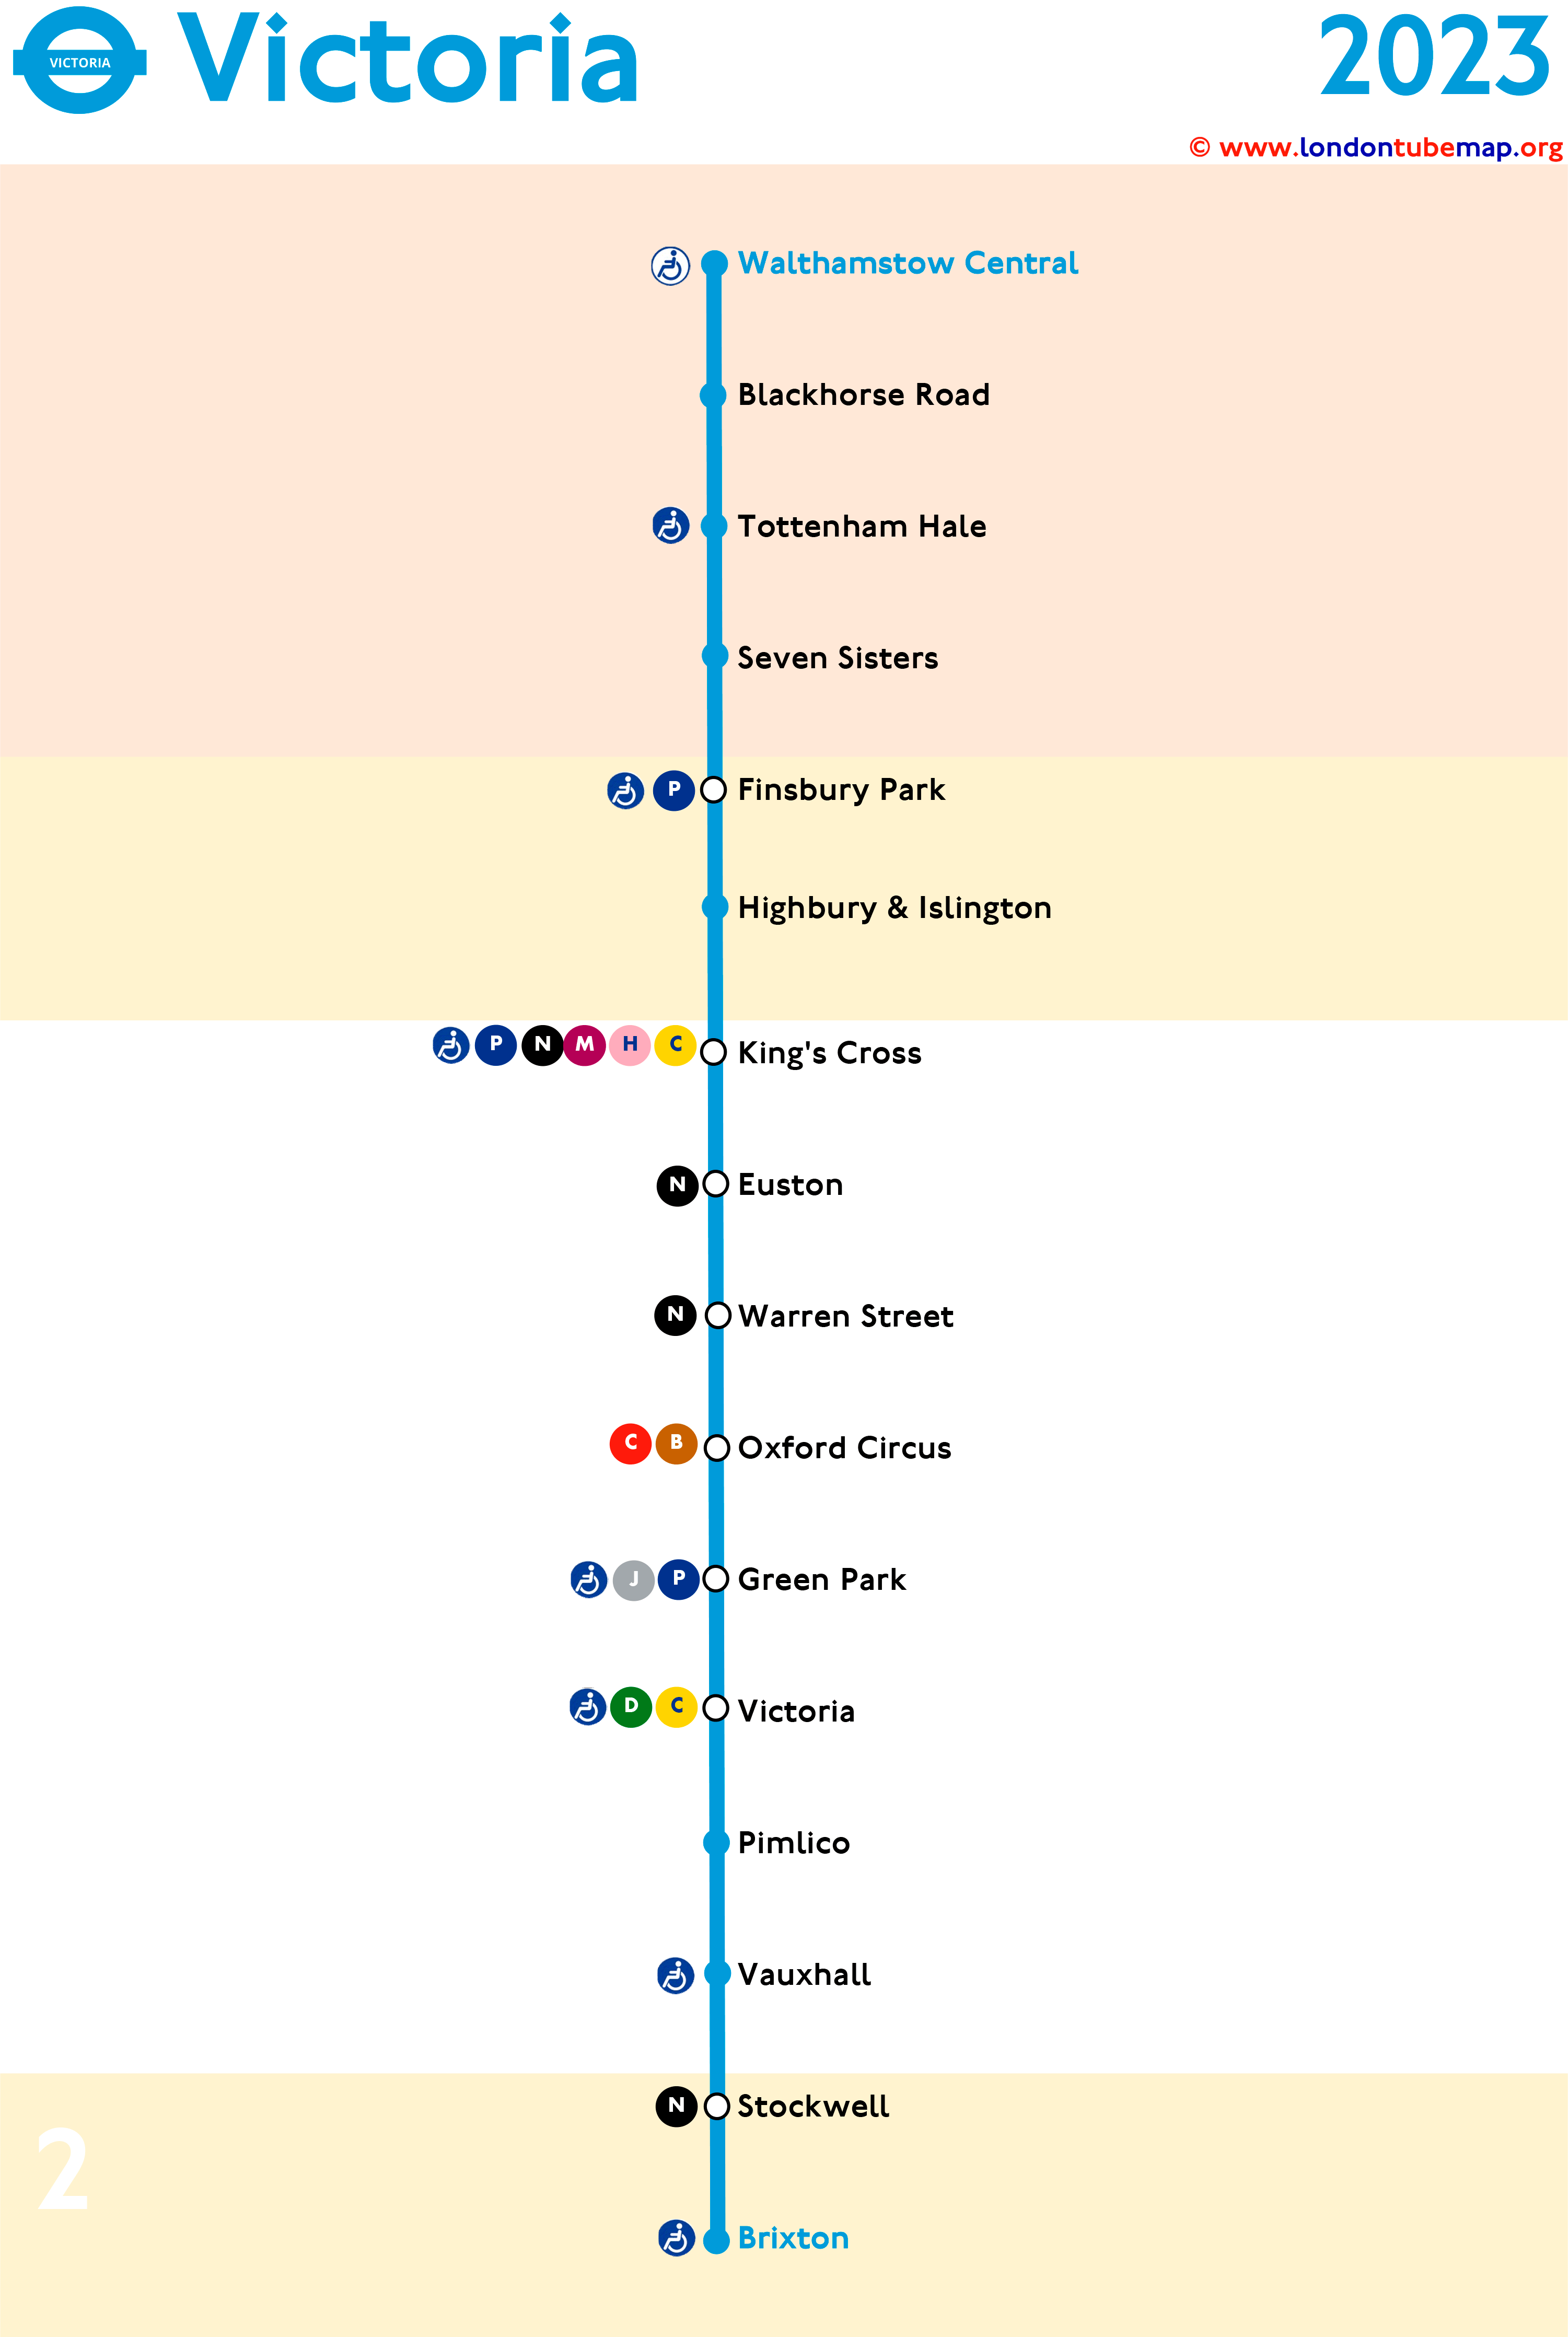 Victoria tube line 2023